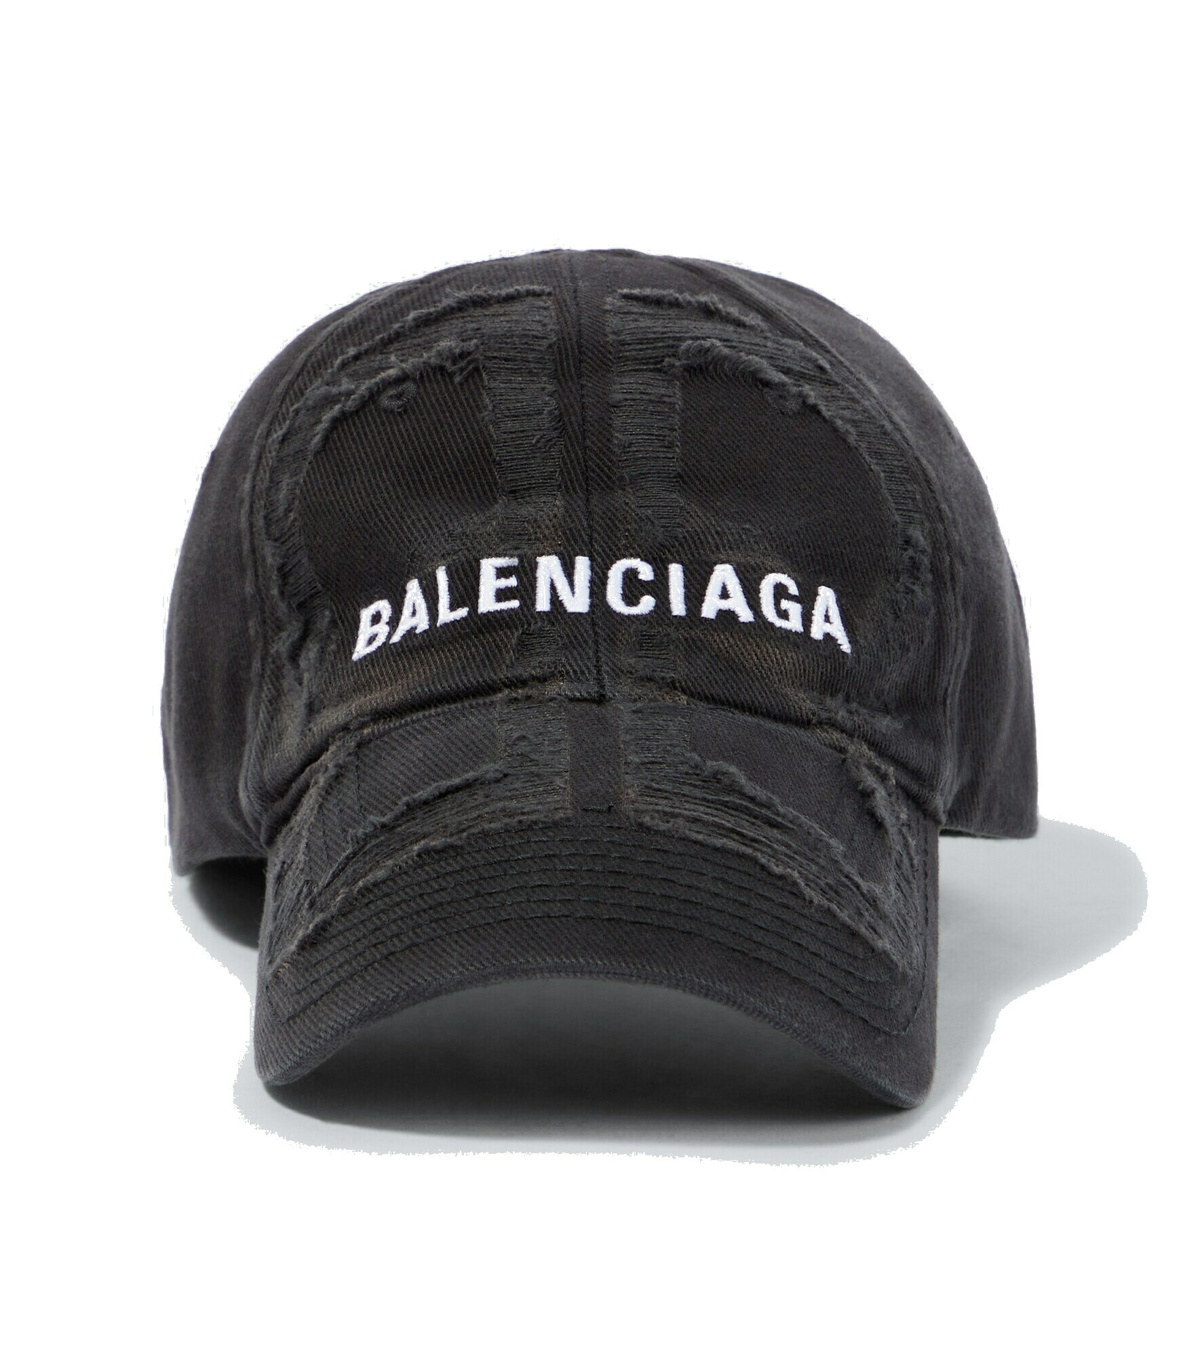 Balenciaga - Distressed cotton baseball cap Balenciaga